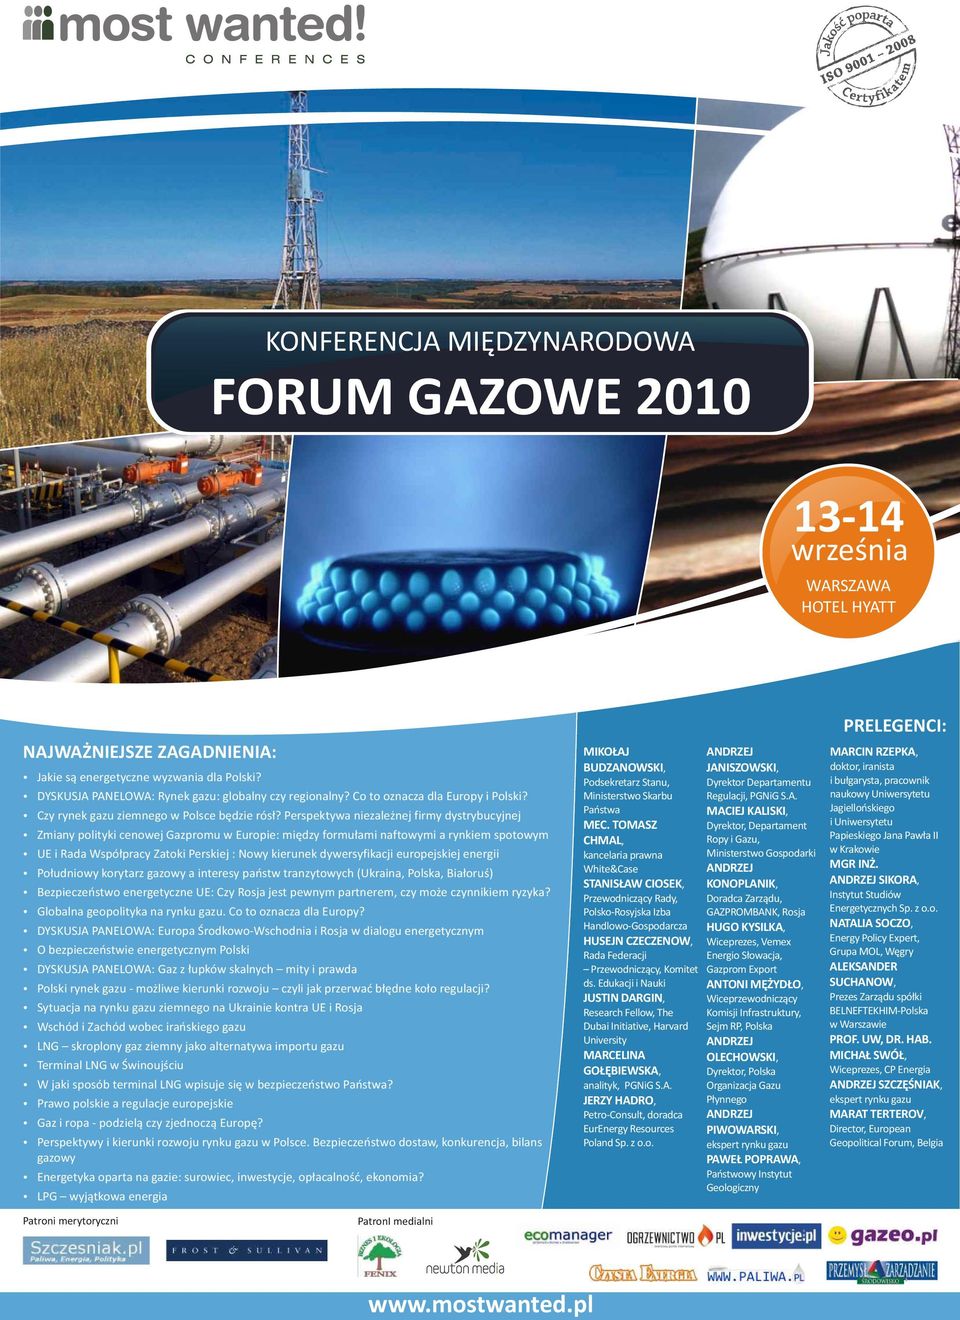 Perspektywa niezale nej firmy dystrybucyjnej Zmiany polityki cenowej Gazpromu w Europie: miêdzy formu³ami naftowymi a rynkiem spotowym UE i Rada Wspó³pracy Zatoki Perskiej : Nowy kierunek